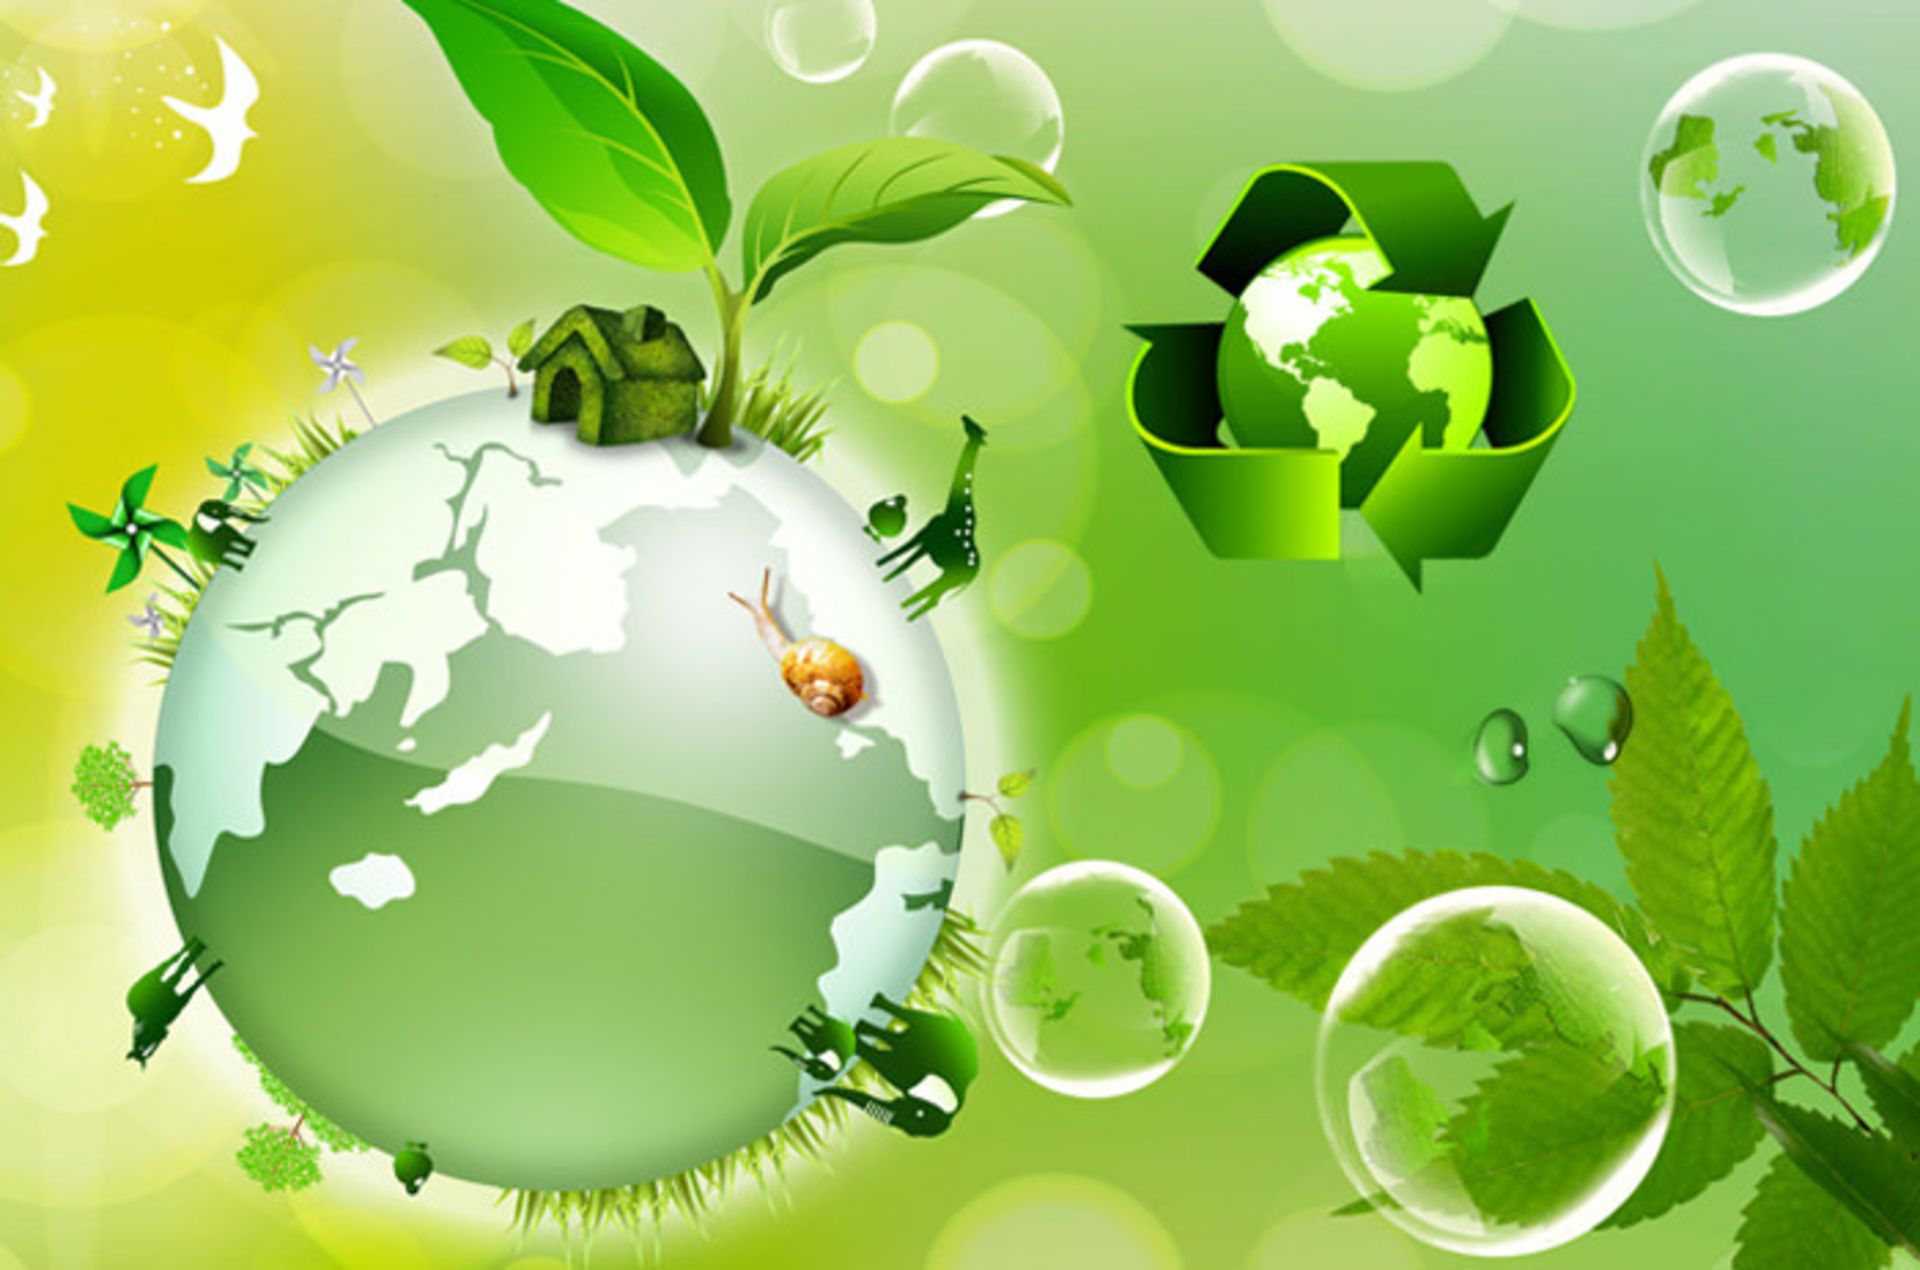 کمک بازیافت به حفظ محیط زیست